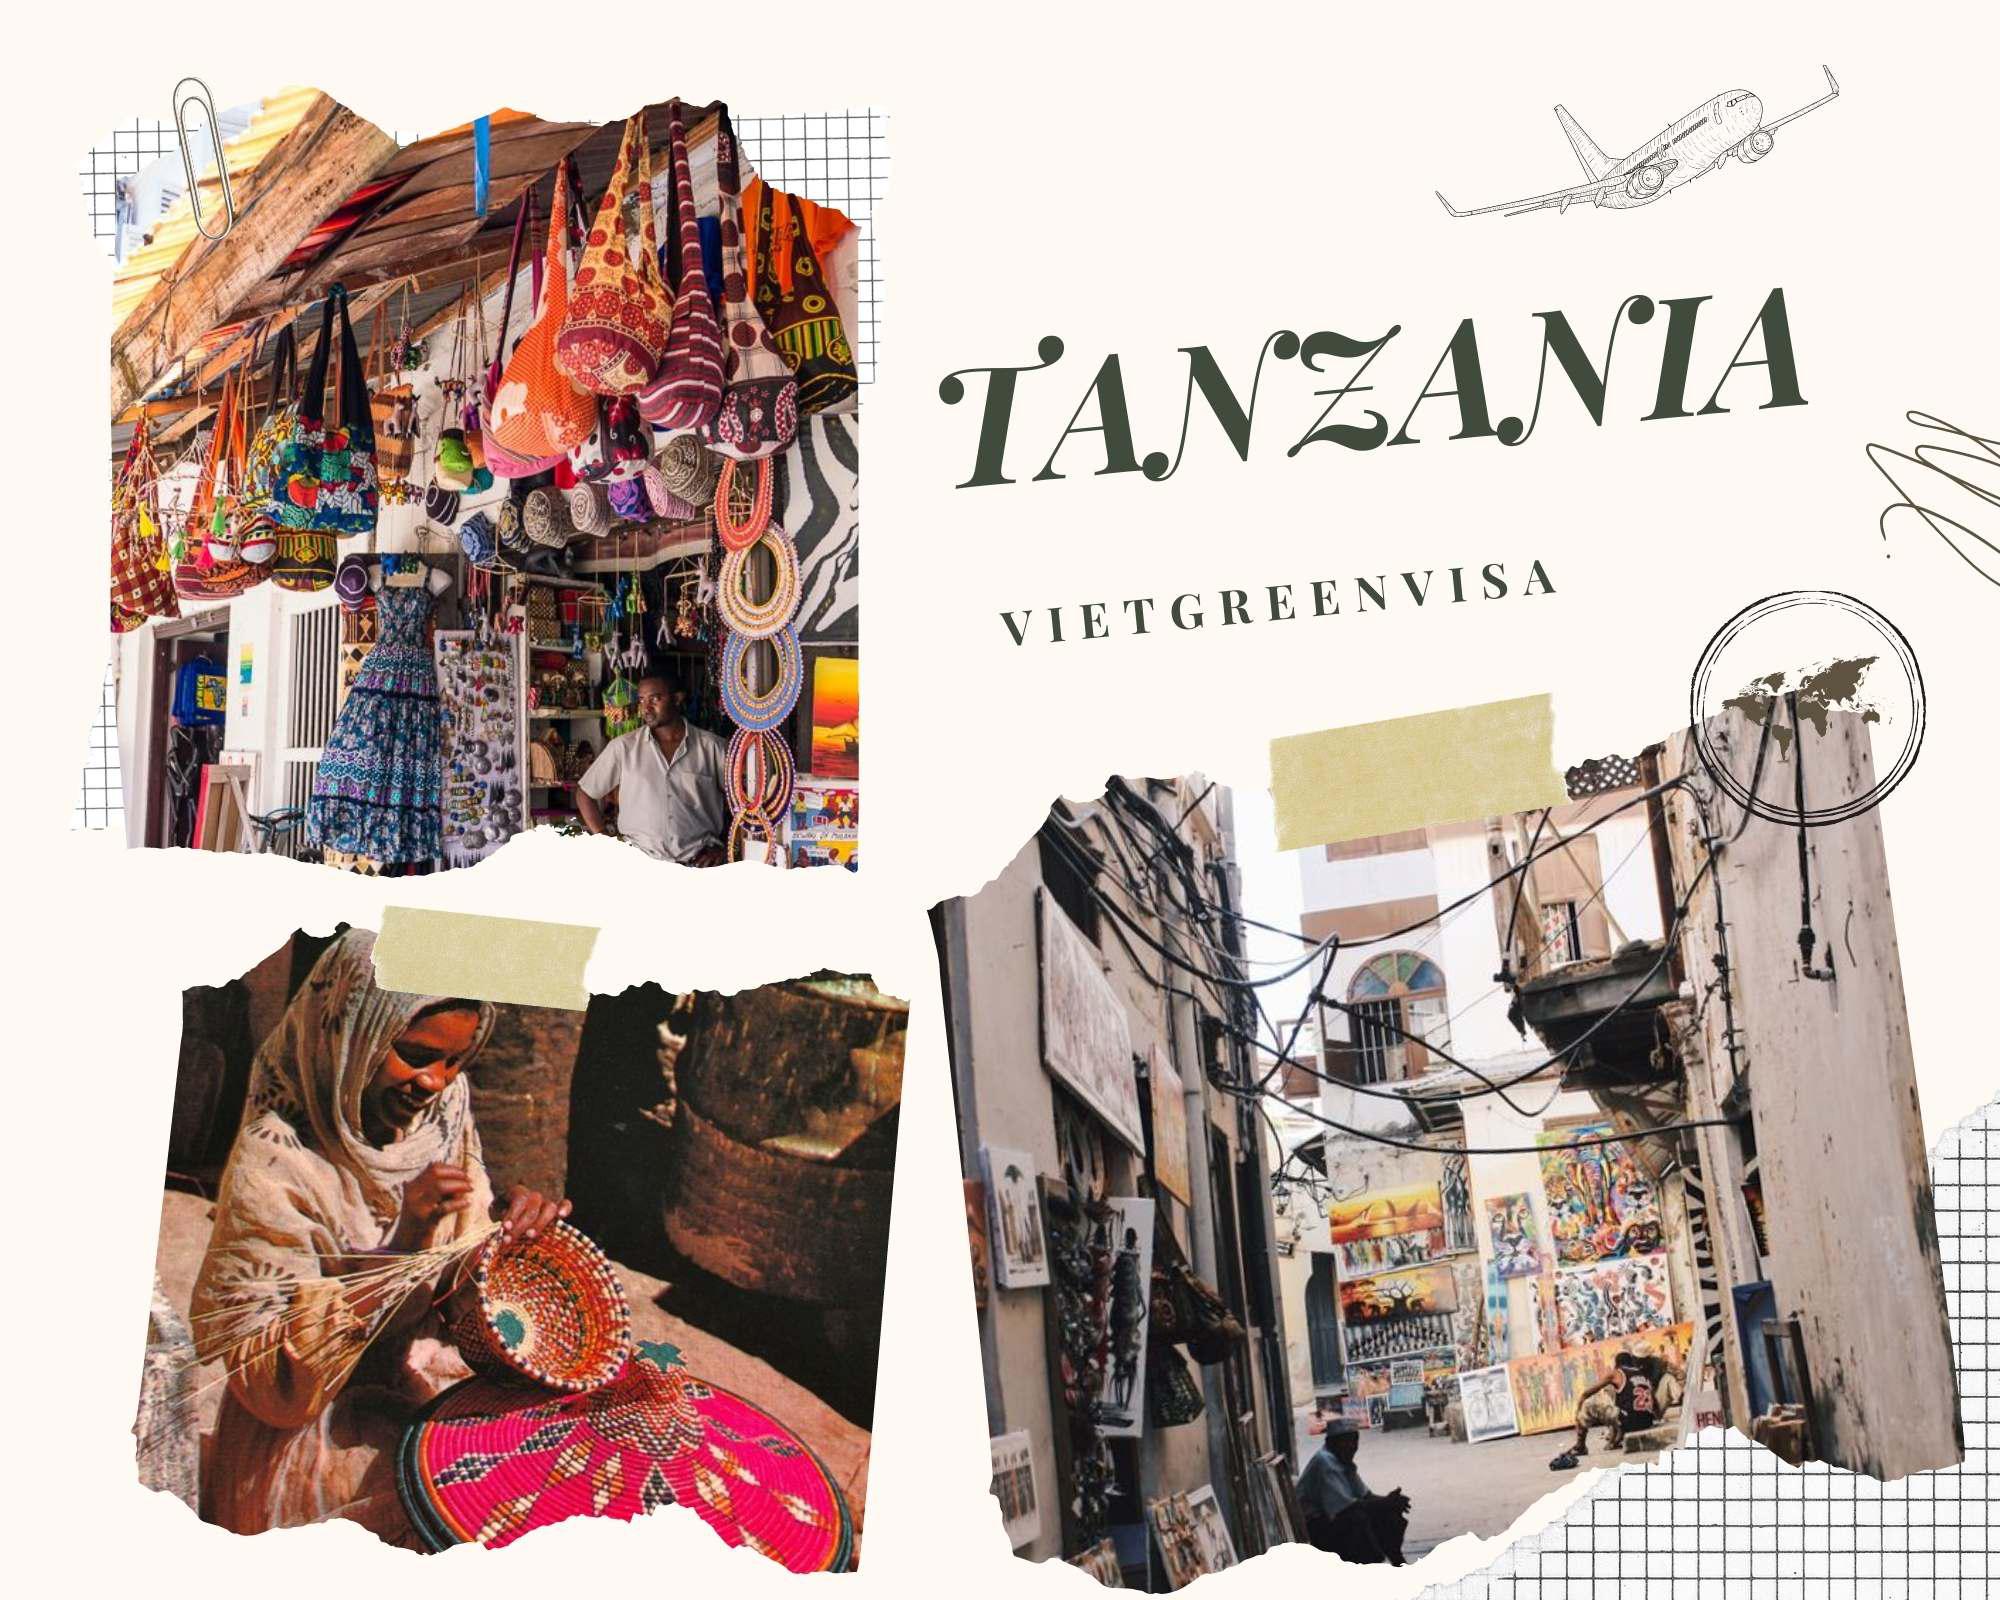 Kinh nghiệm xin visa du lịch Tanzania trọn gói